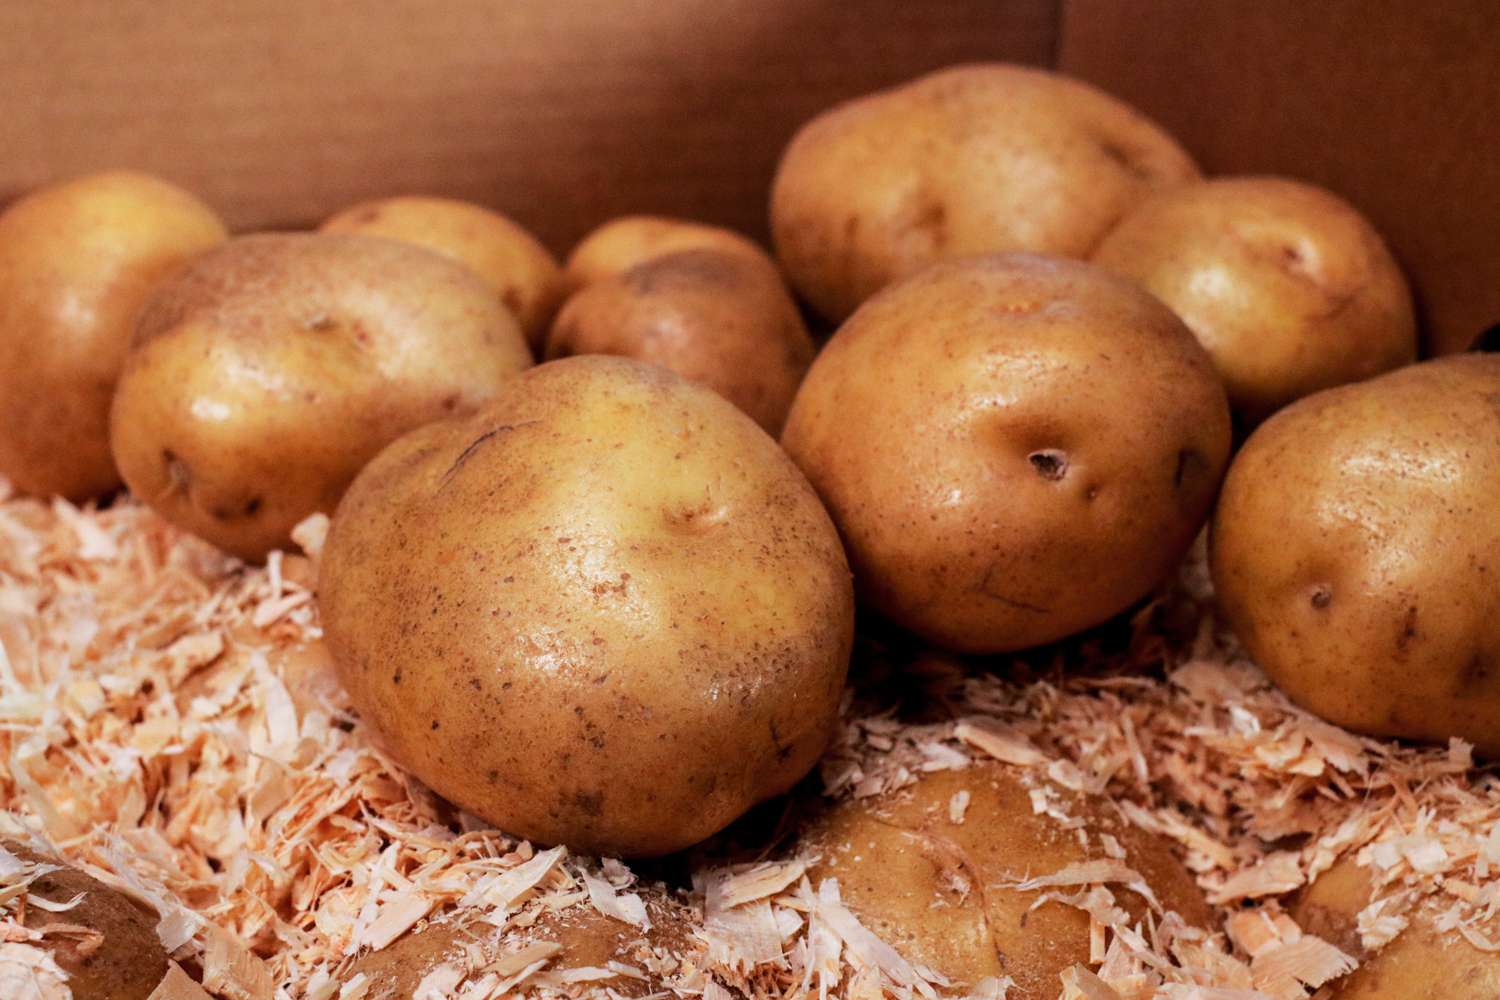 Feuchte Kartoffeln in Pappkarton mit Sägespänen gelagert